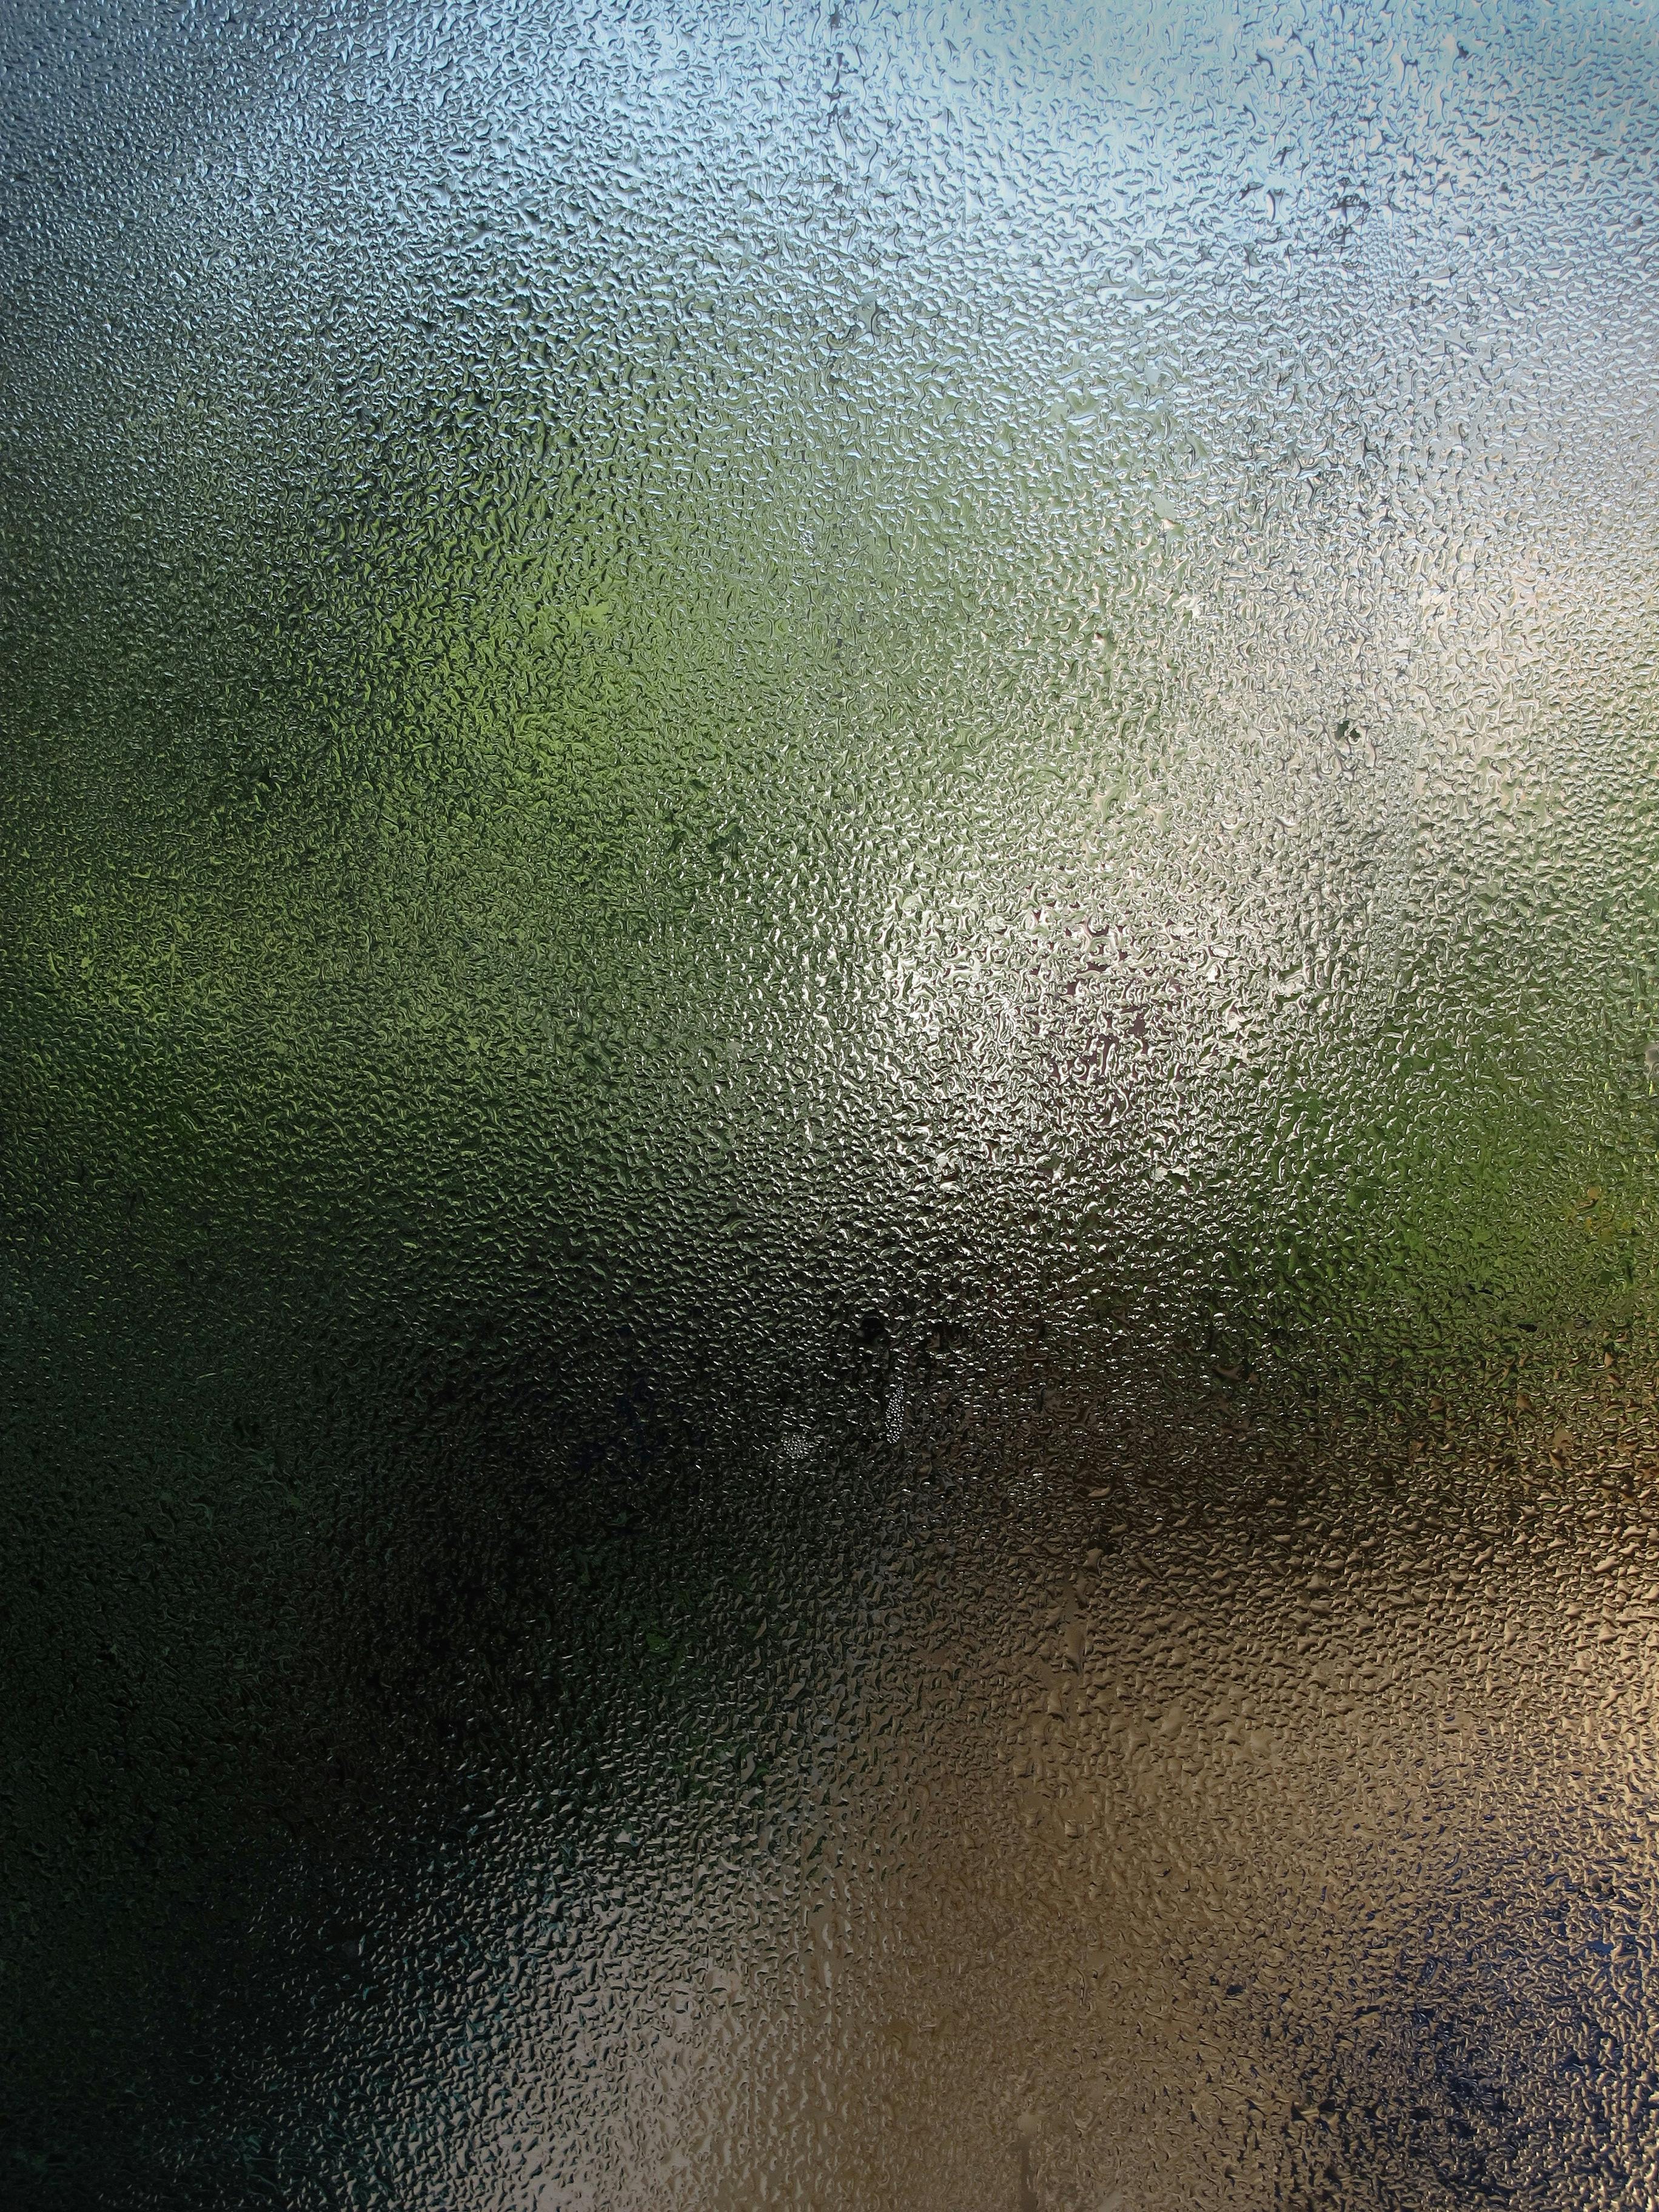 window glass textures